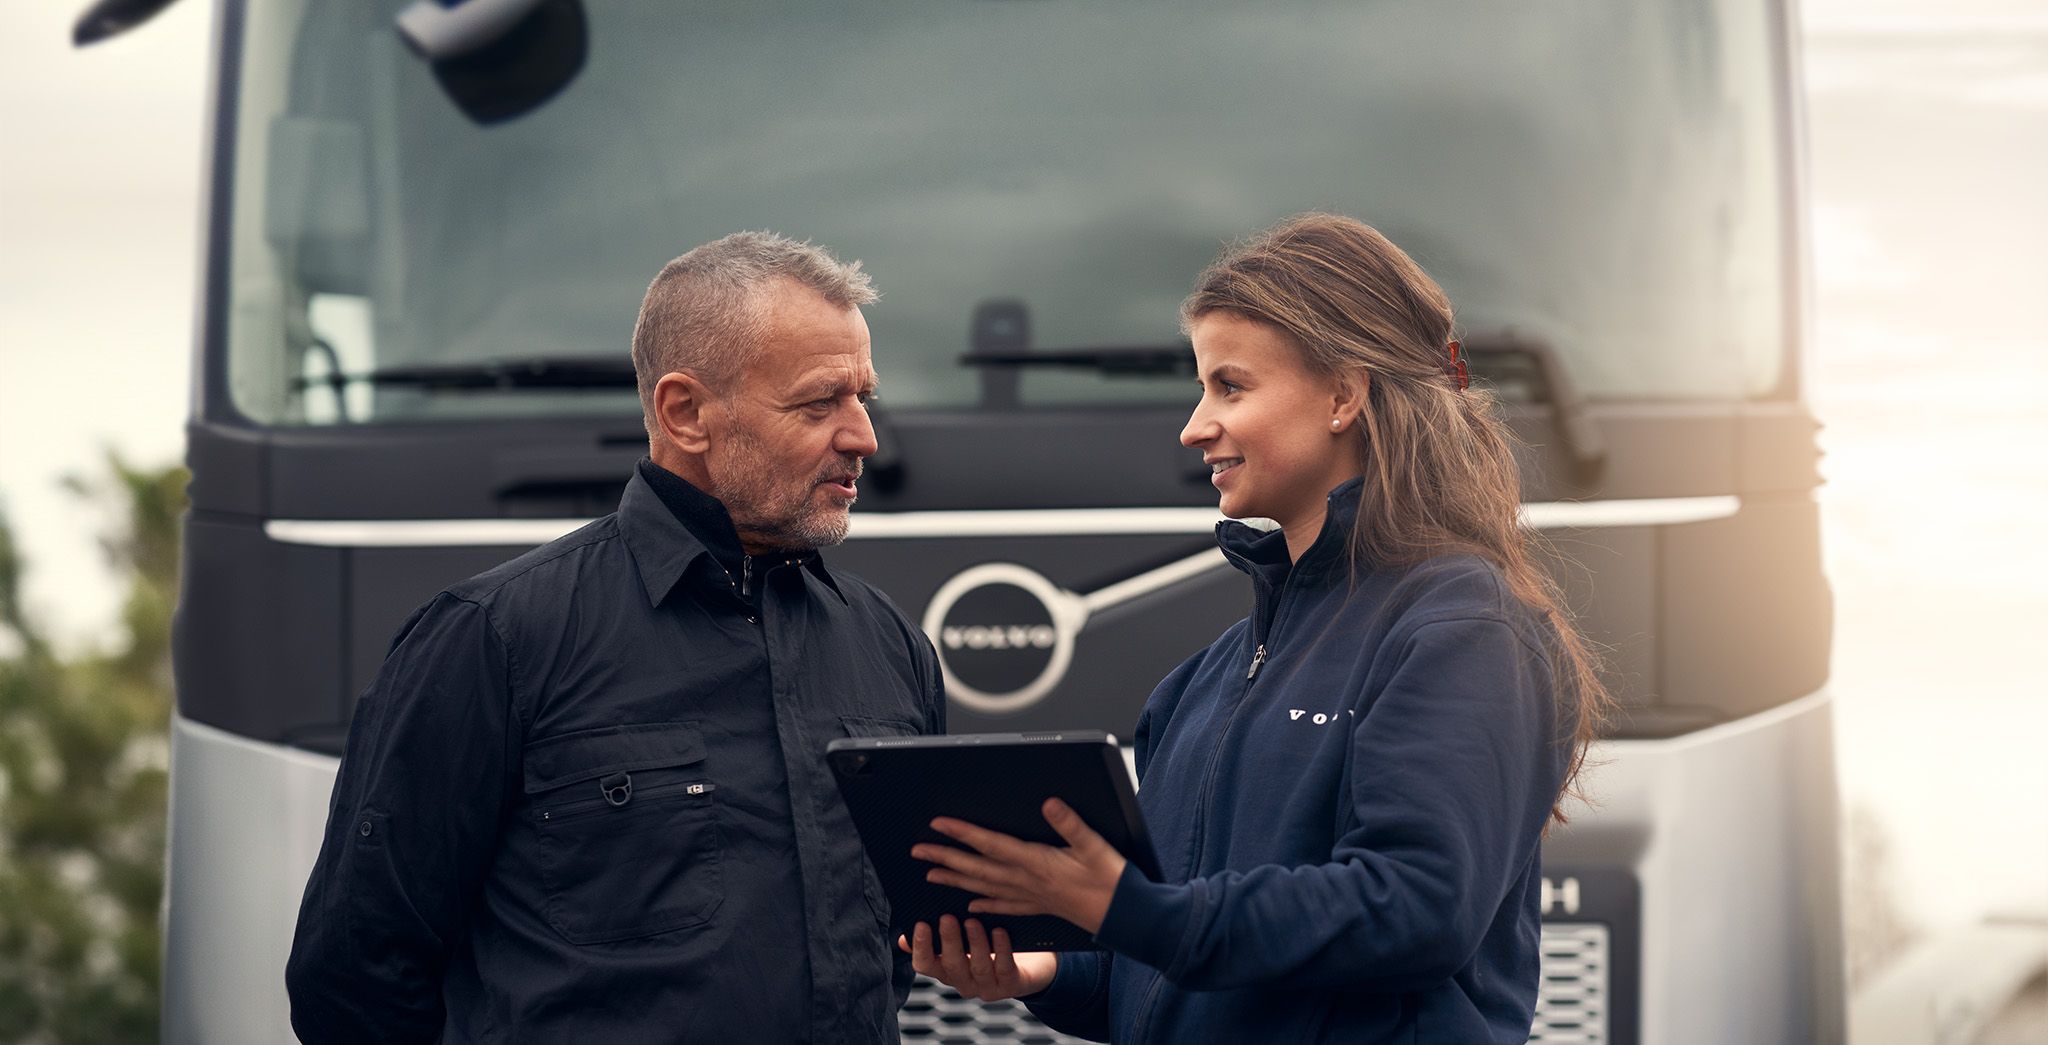 Mann og kvinne snakker foran en lastebil og holder en digital skjerm